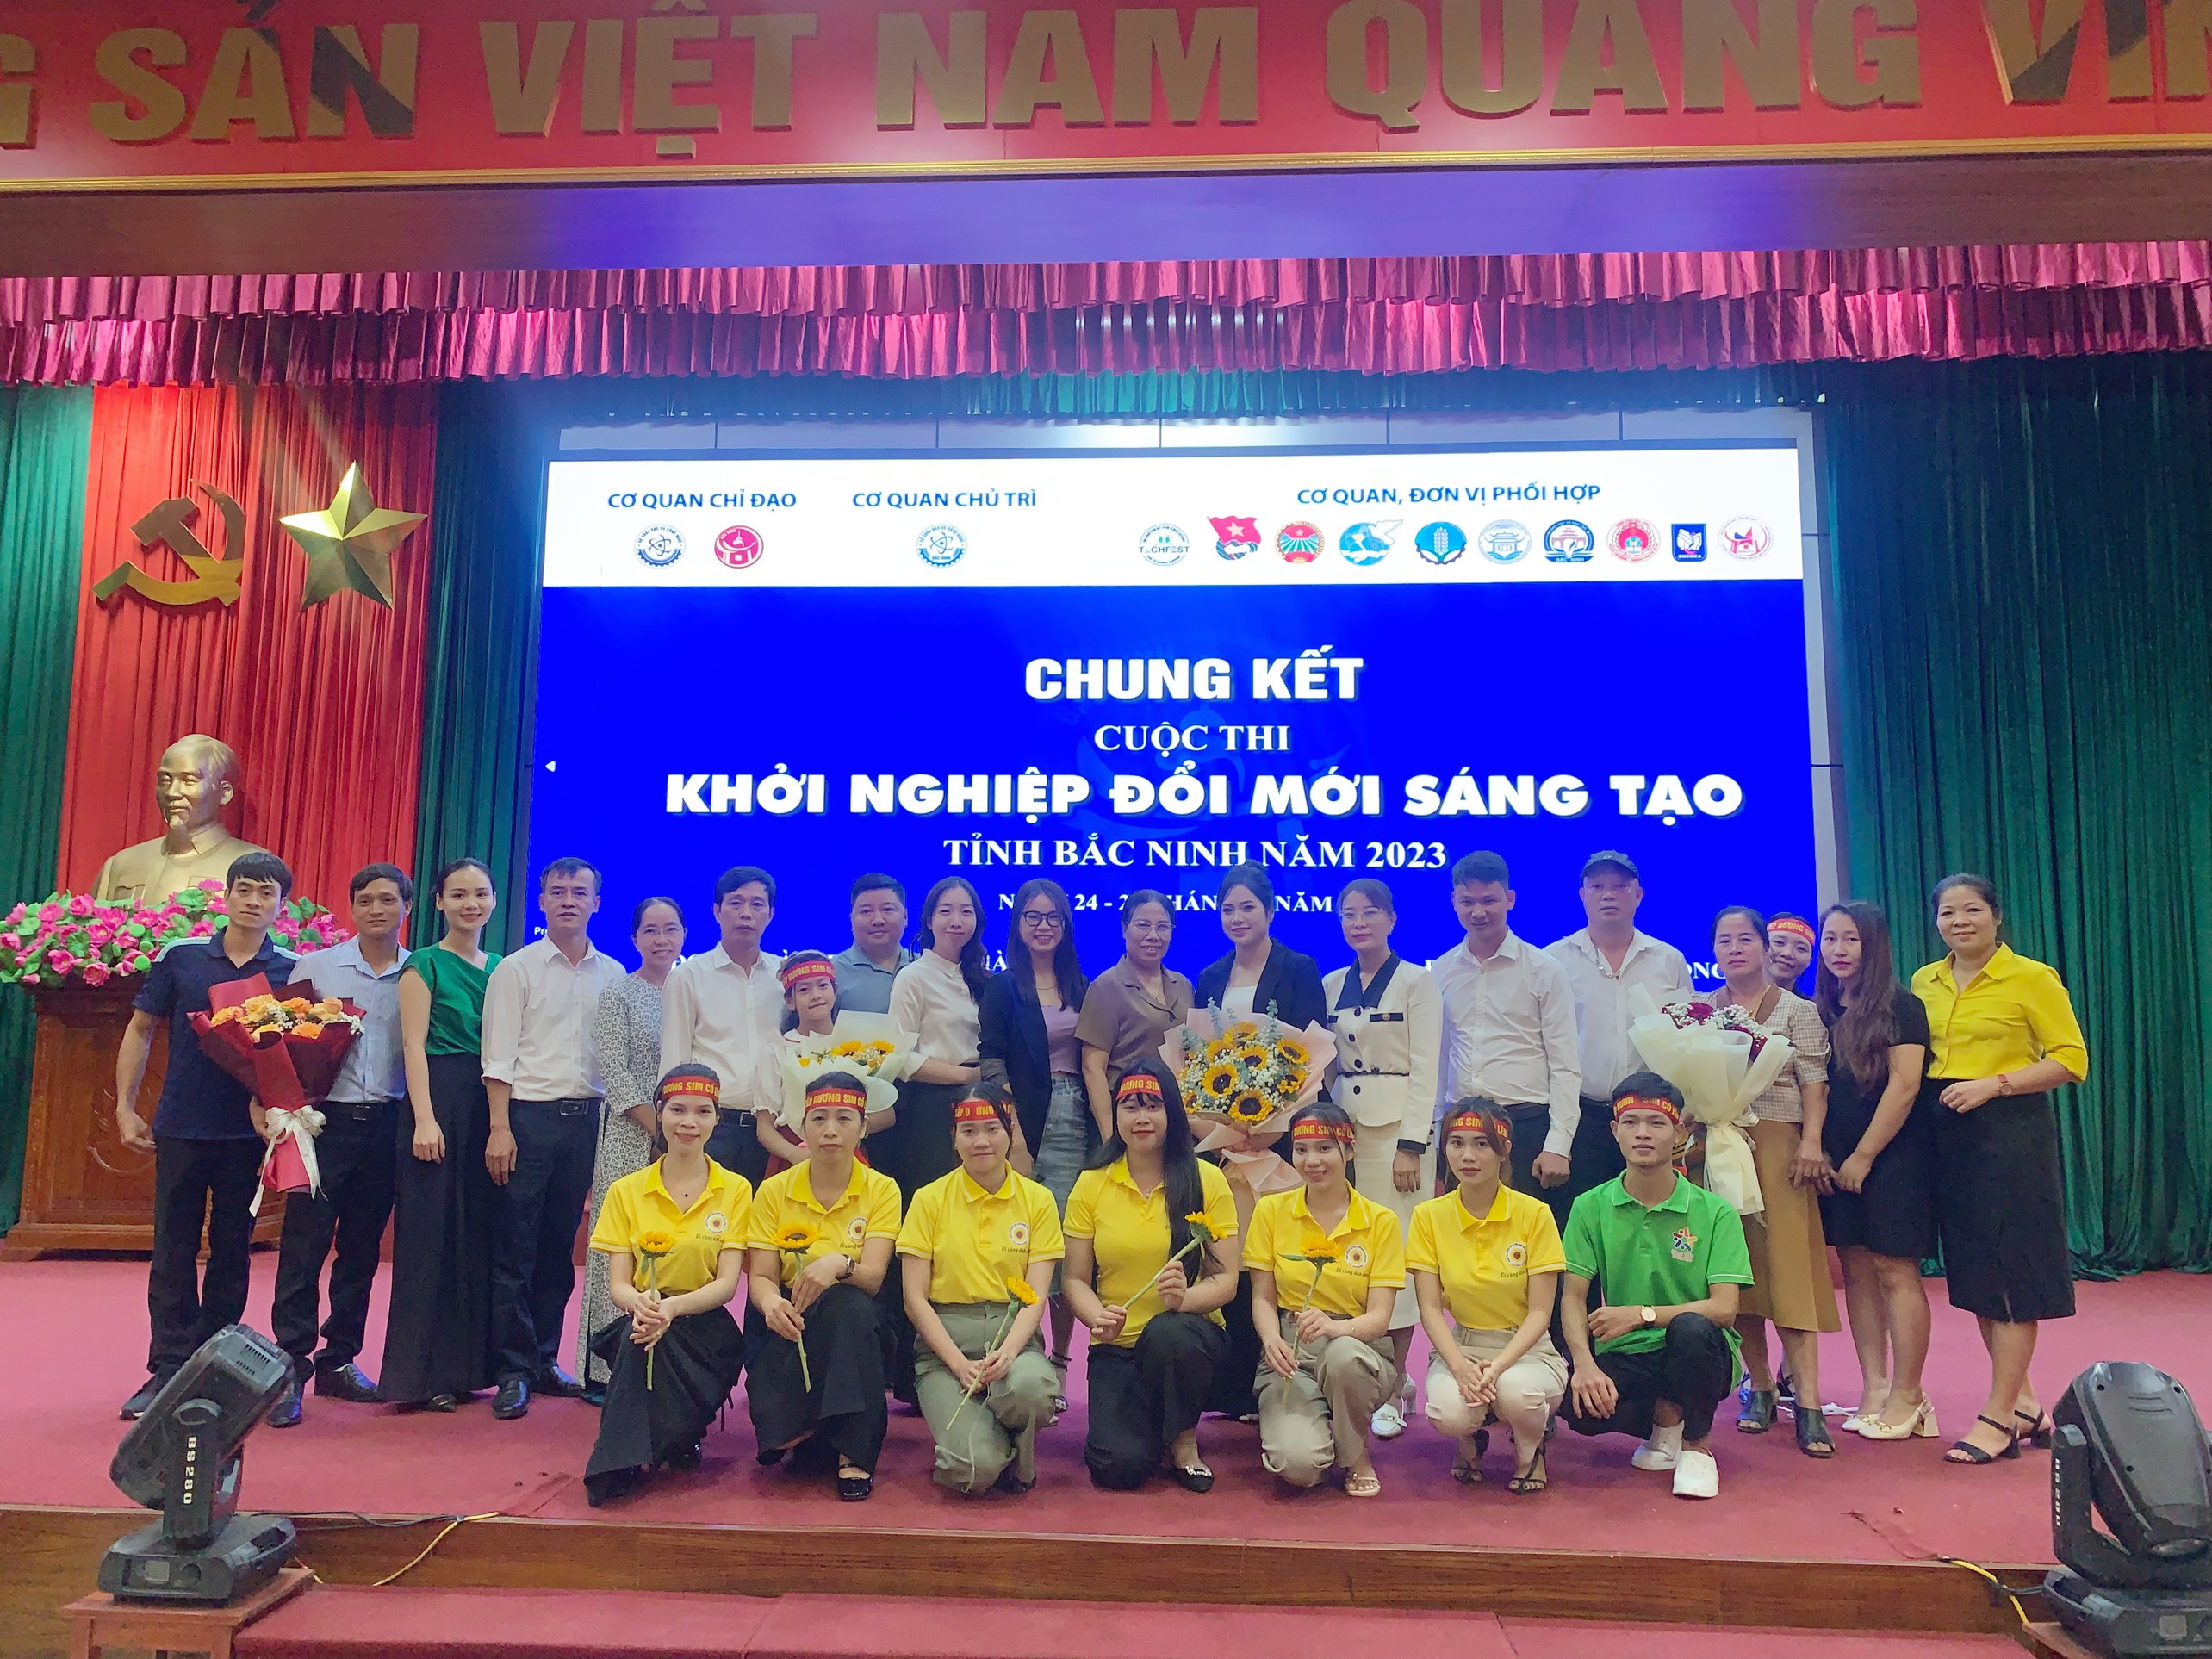 Chung kết Cuộc thi Khởi nghiệp Đổi mới sáng tạo tỉnh Bắc Ninh năm 2023